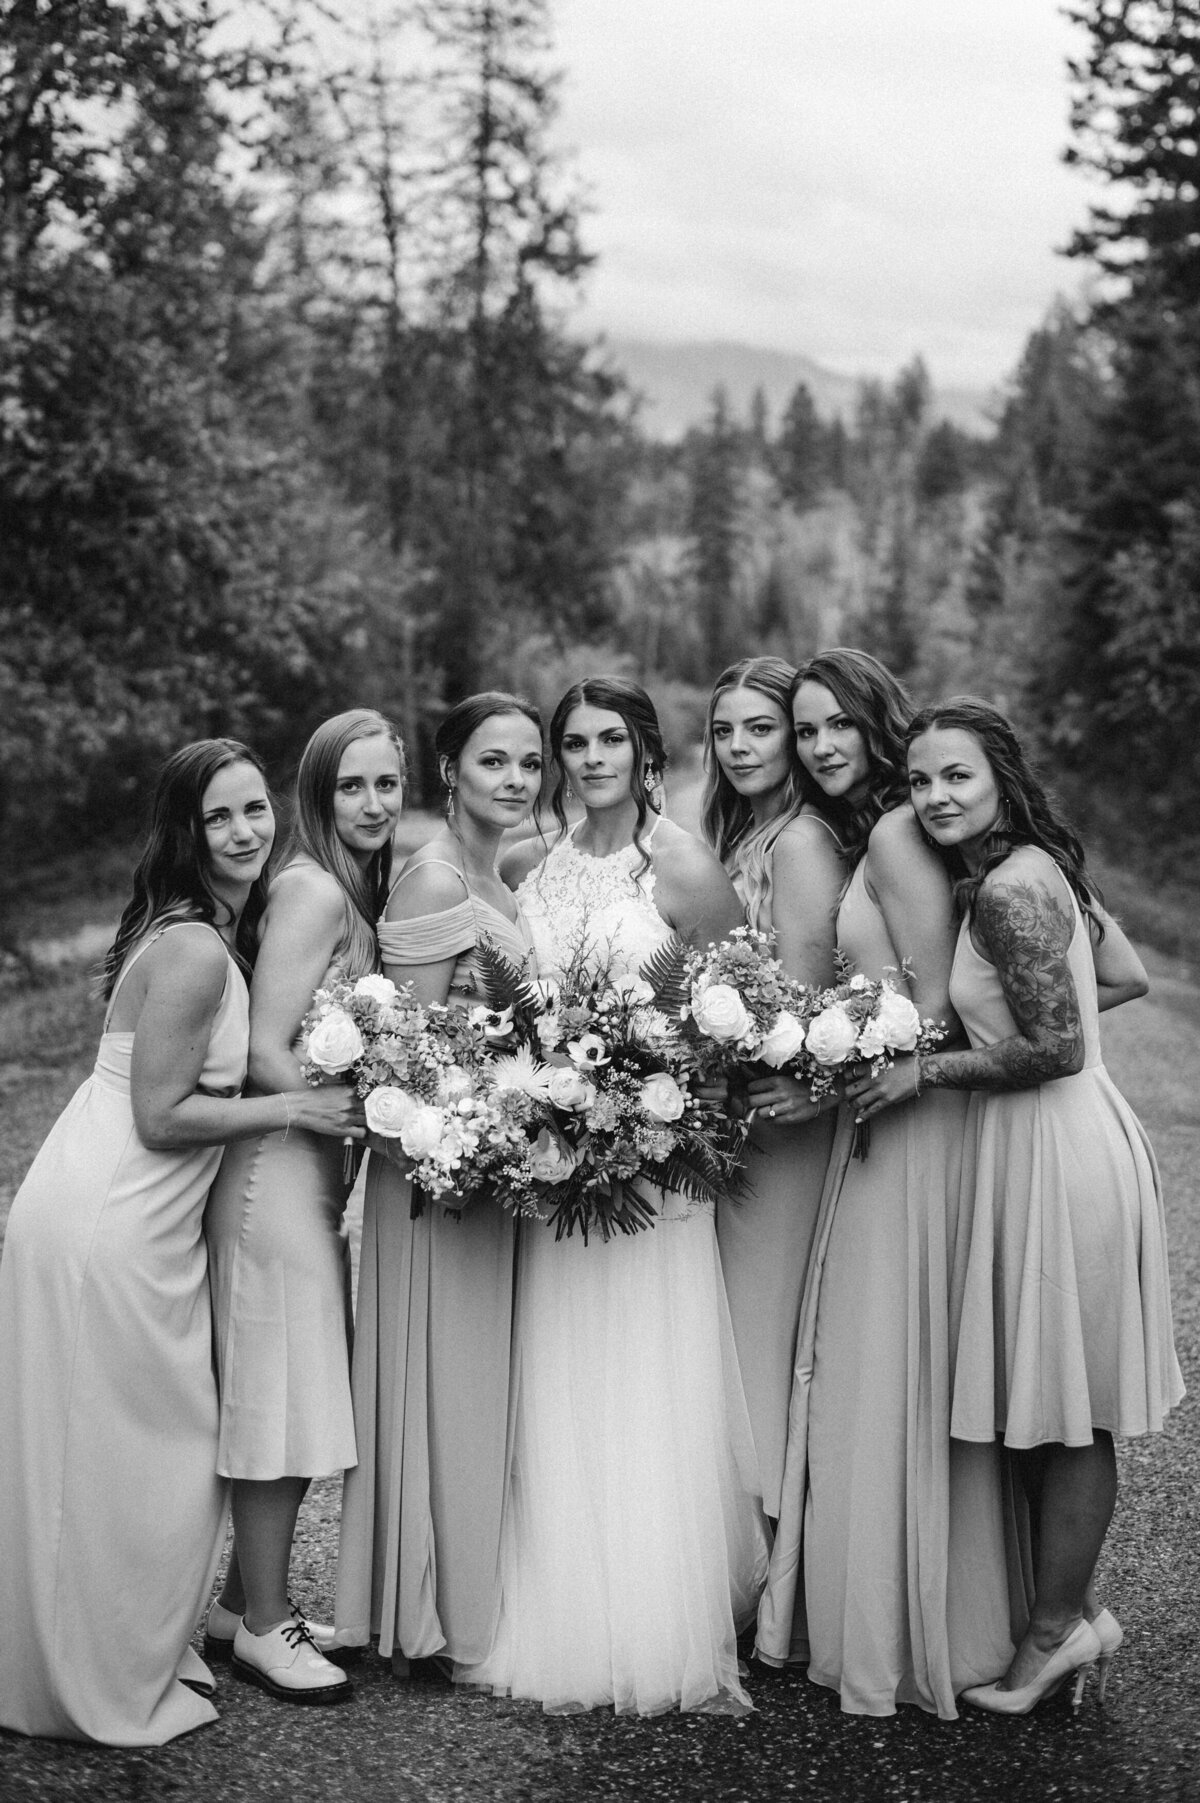 West Kootenay Wedding Photographer, Fernie, BC, Canada